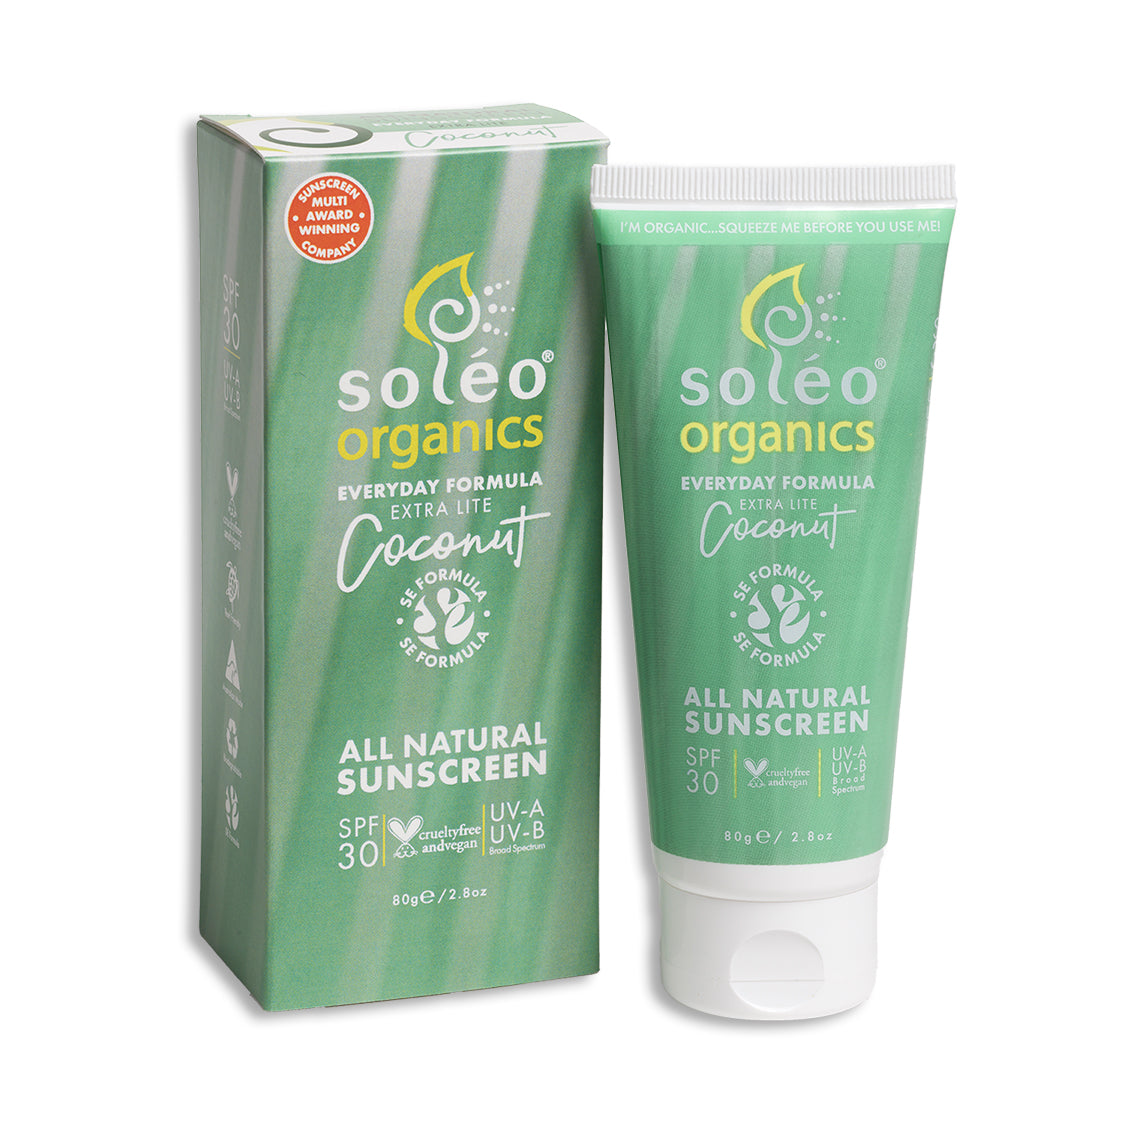 Soléo Organics Everyday Formula Extra lite Coconut